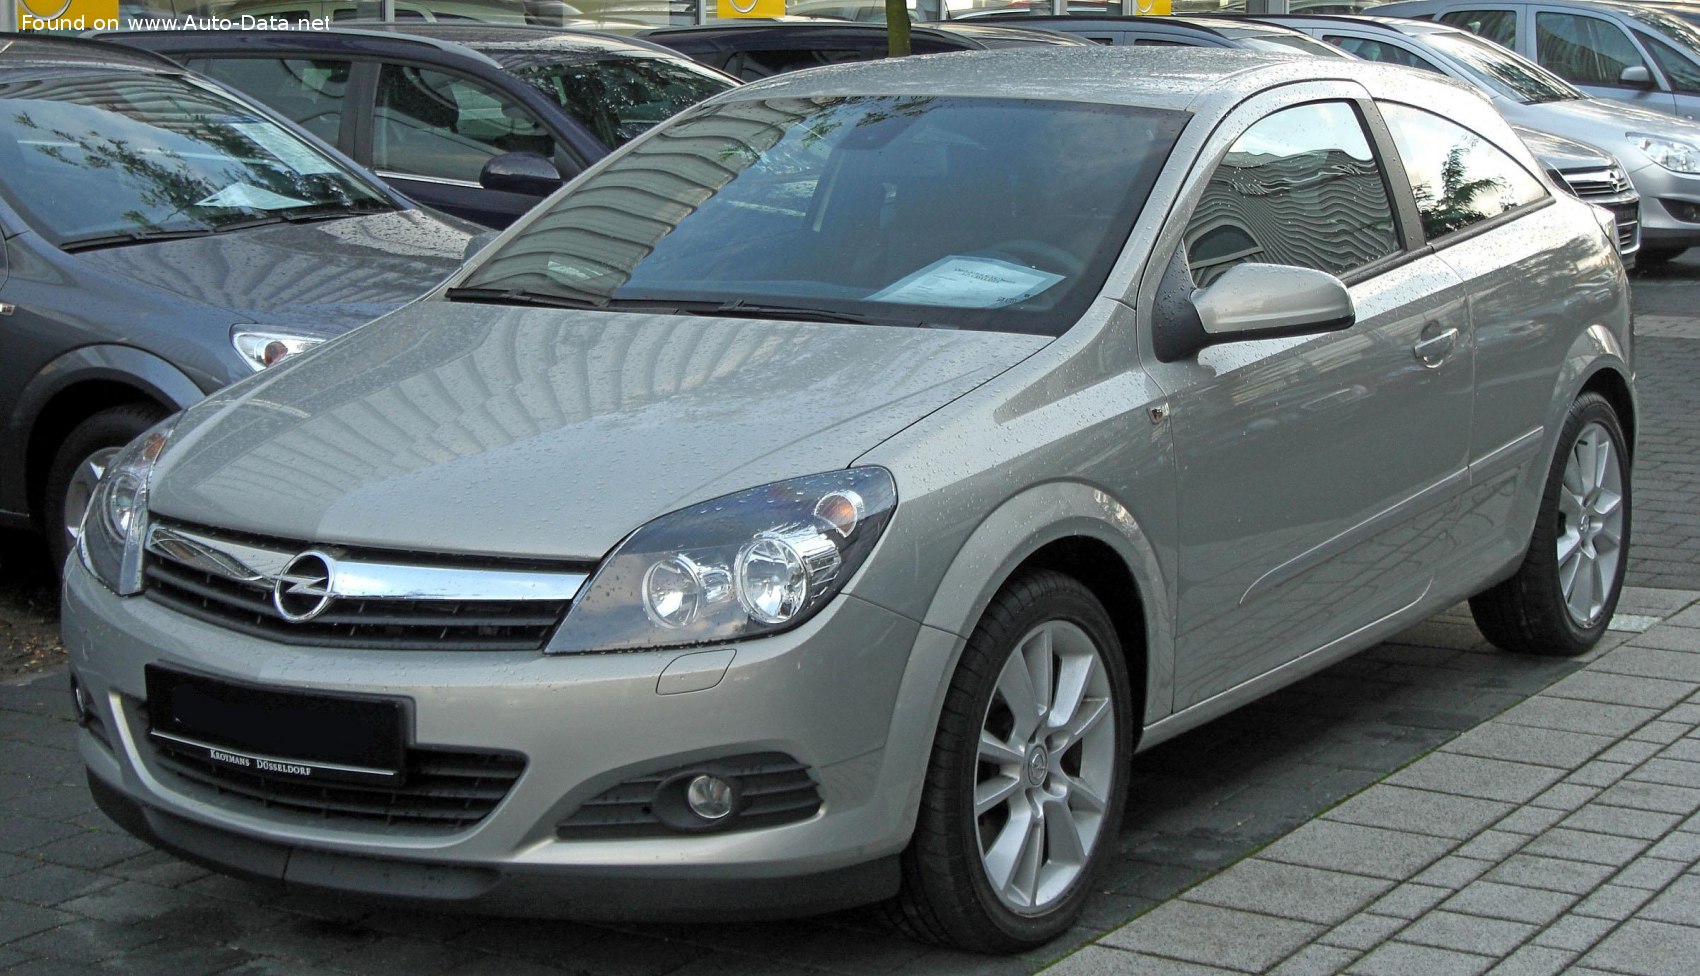 2005 Opel Astra H GTC 2.0i 16V Turbo (200 Hp)